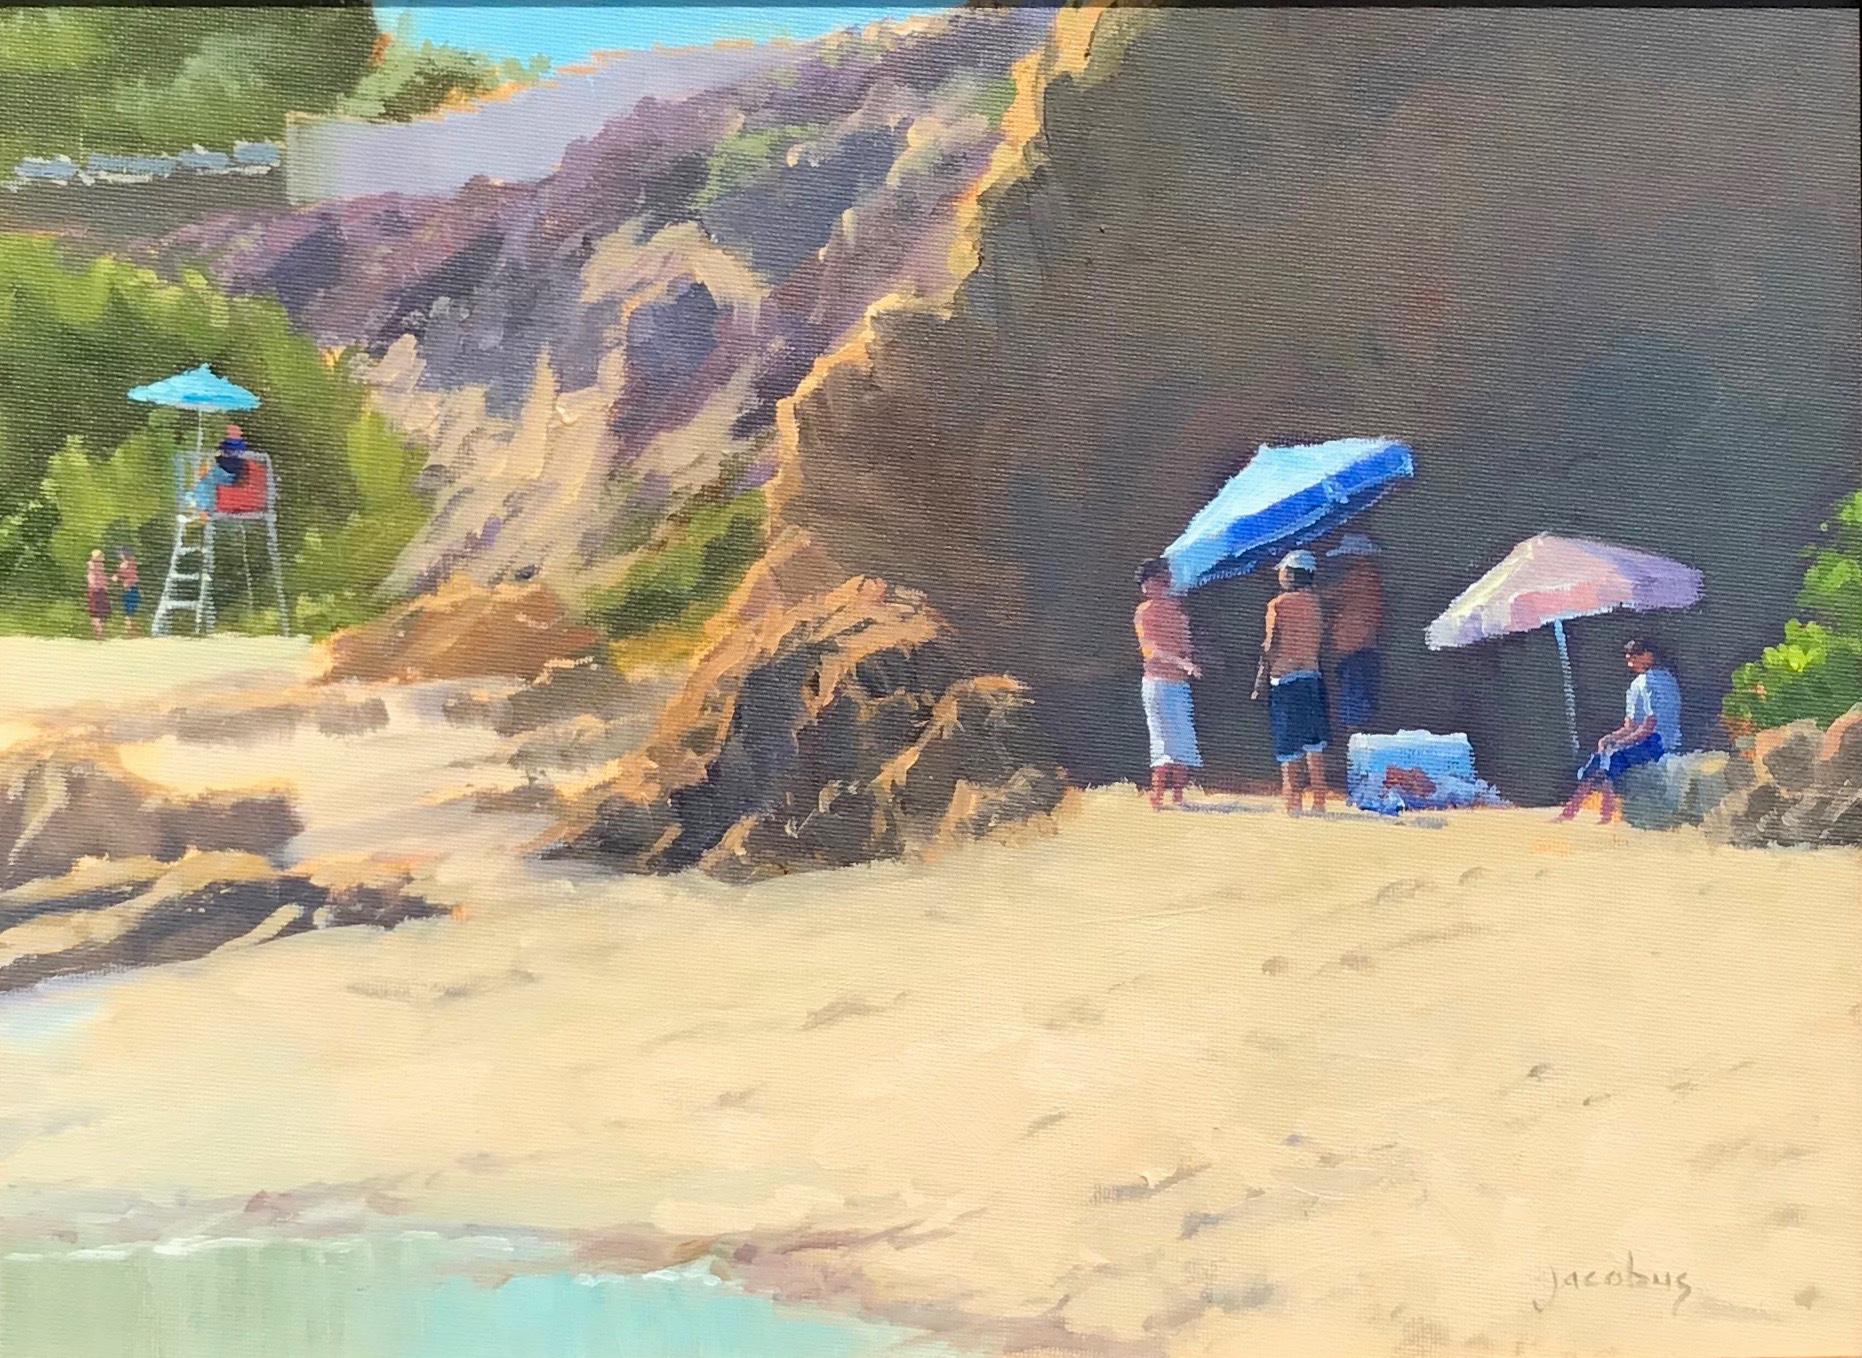 Landscape Painting Jacobus Baas - « 80' At Divers Cove » - Scène côtière de Californie du Sud